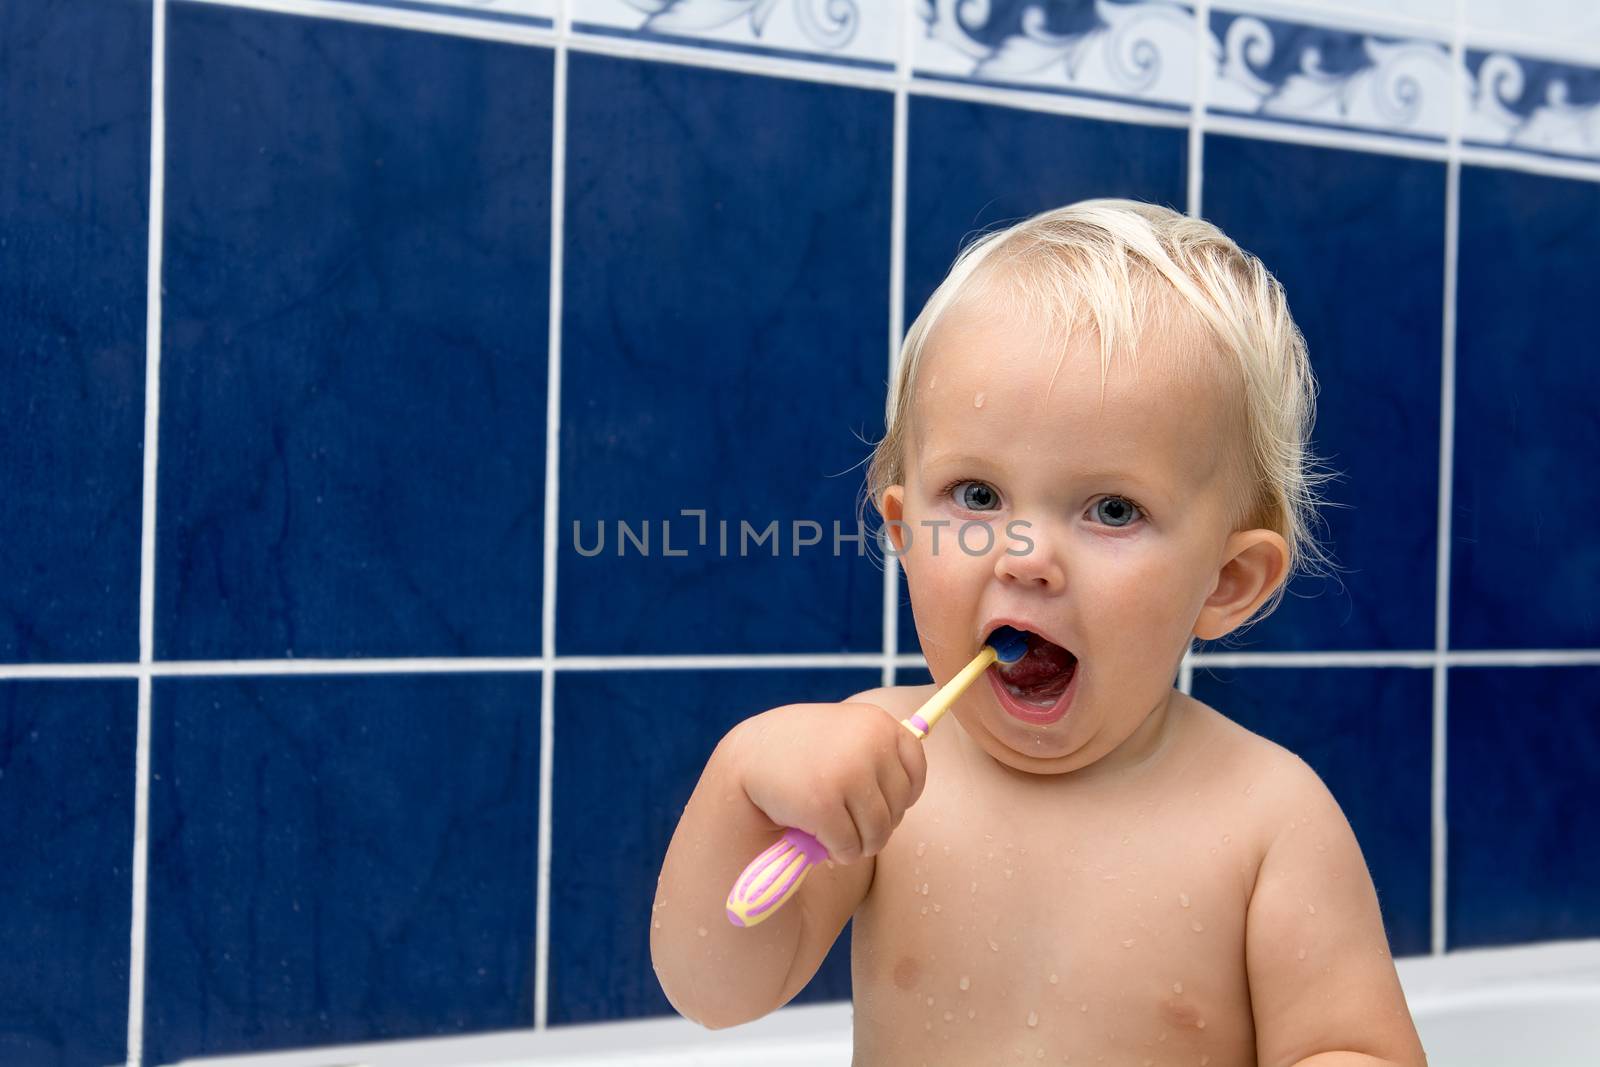 Little girl is brushing teeth in bathroom. Blue tiles behind. Looking at camera